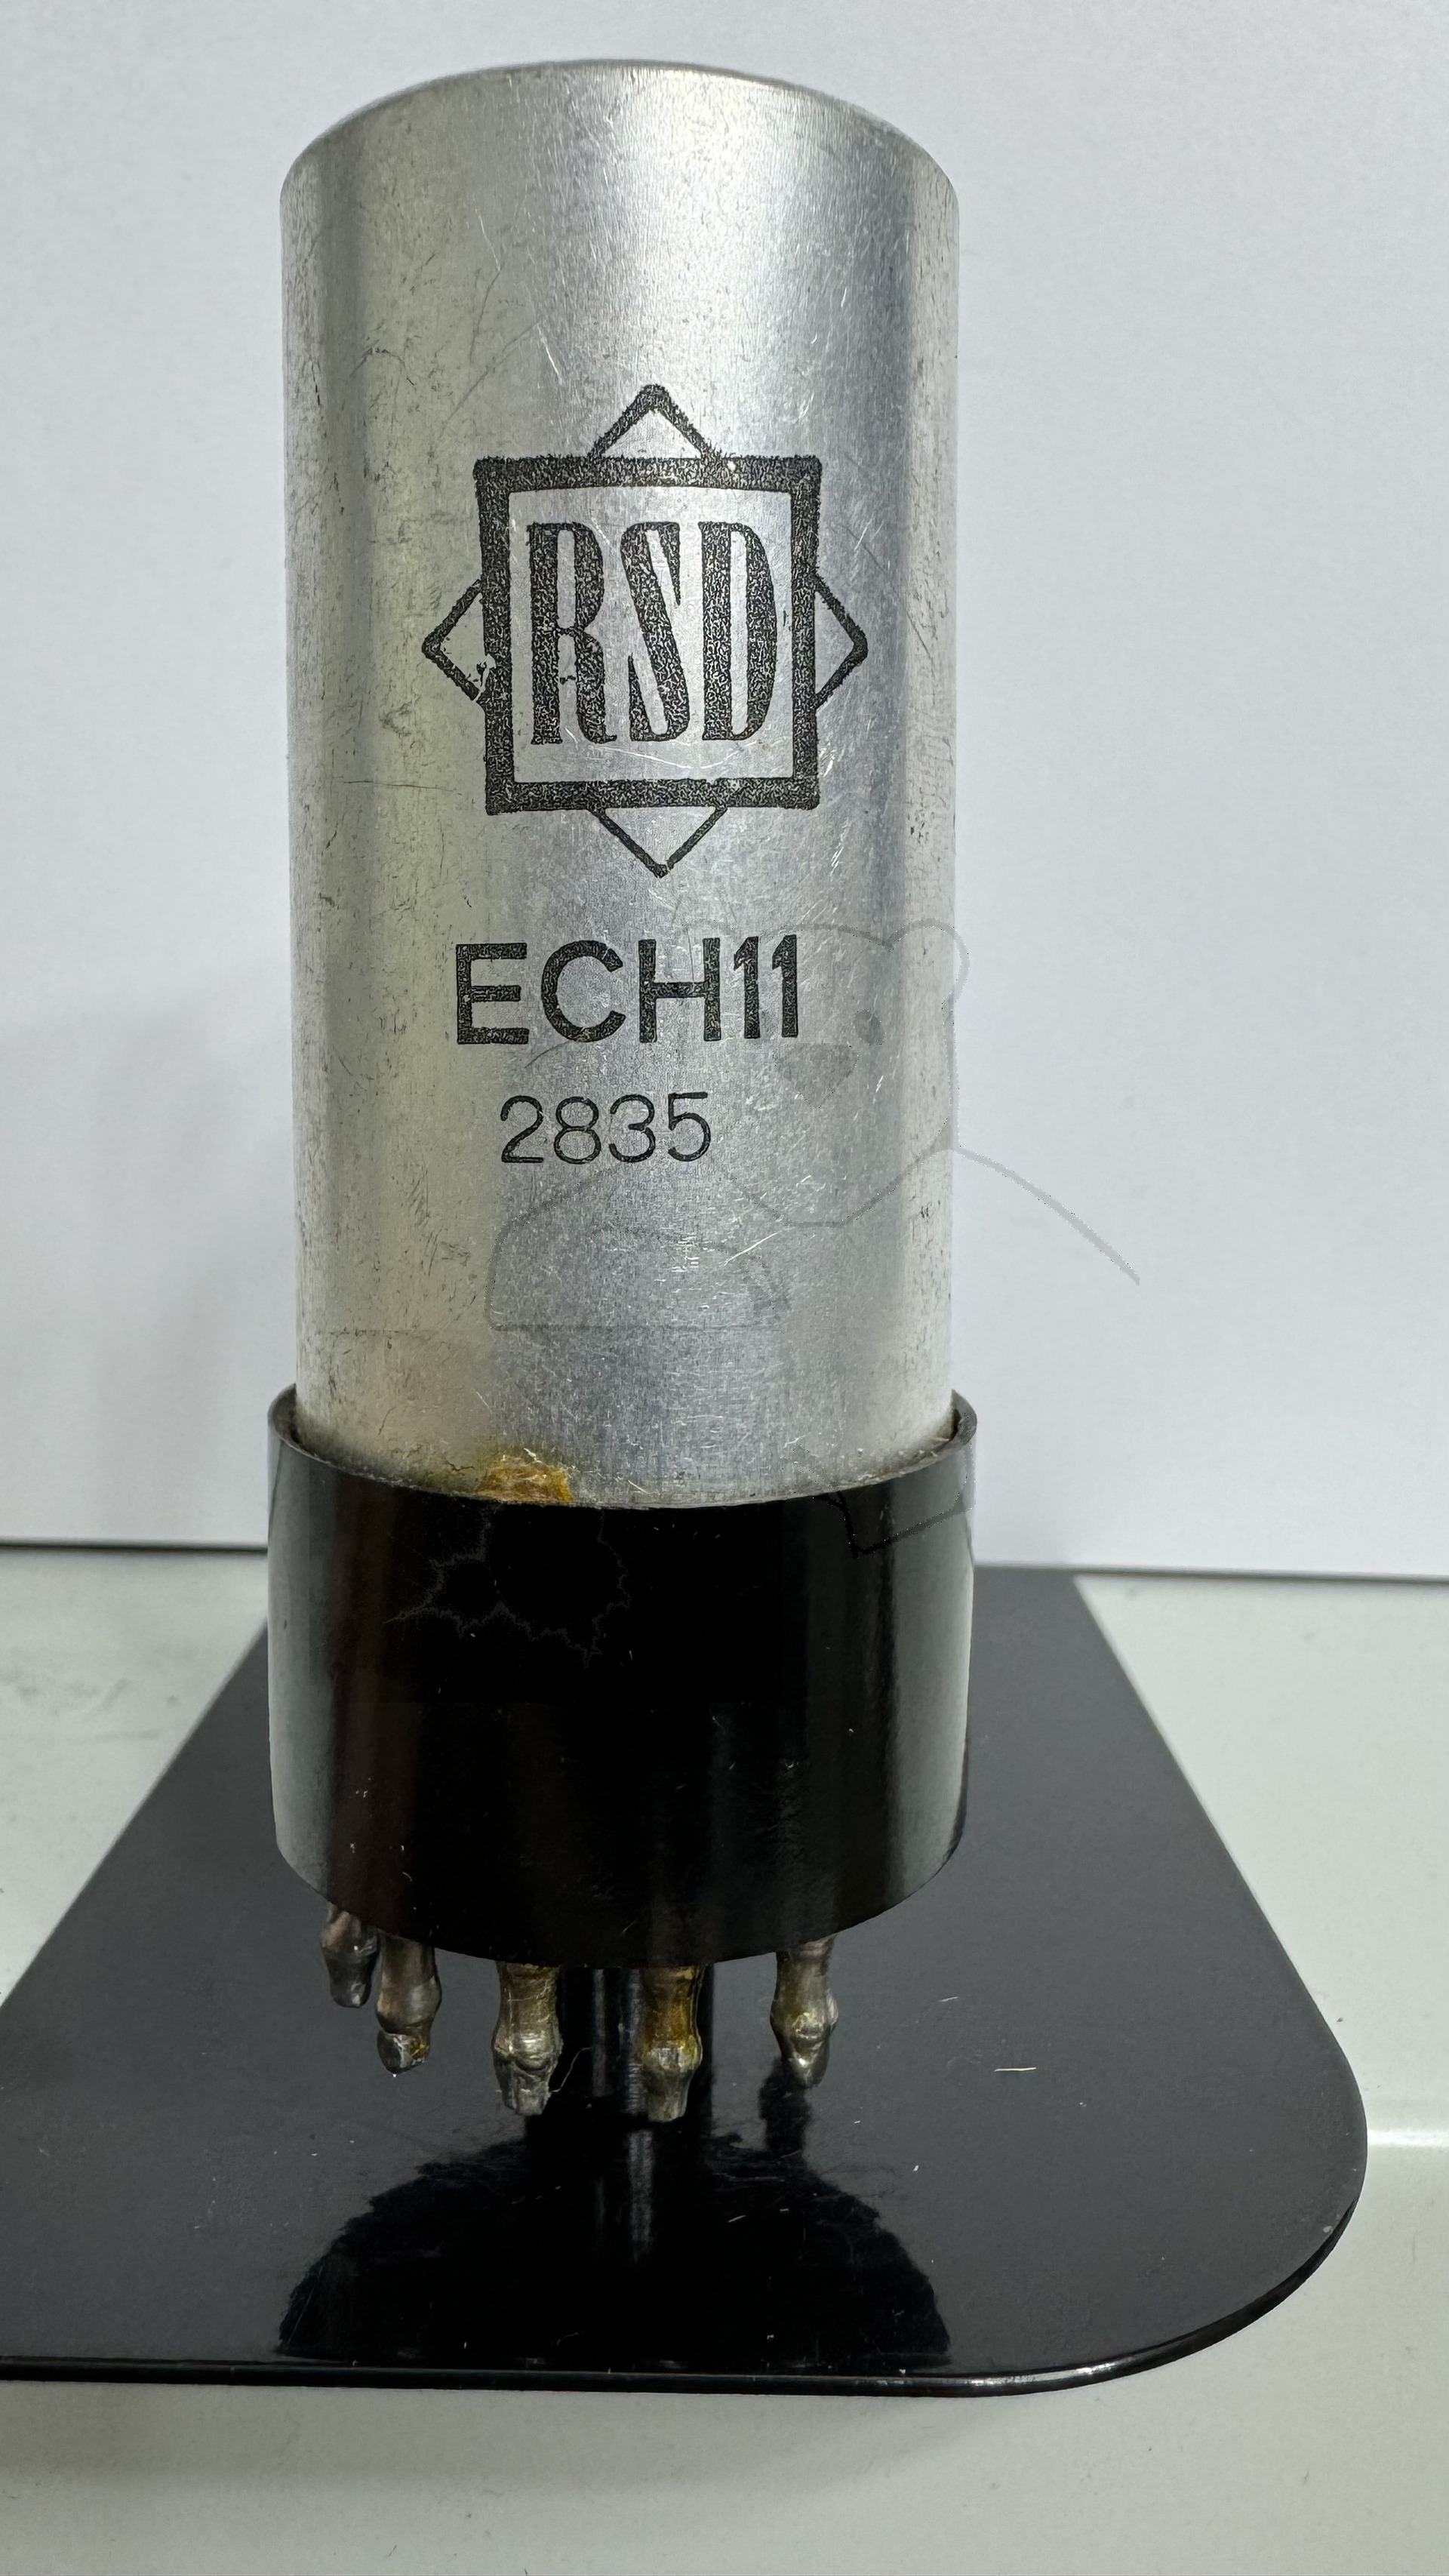 Röhre ECH11 (Ersatz von RSD) #7900 Bild 1